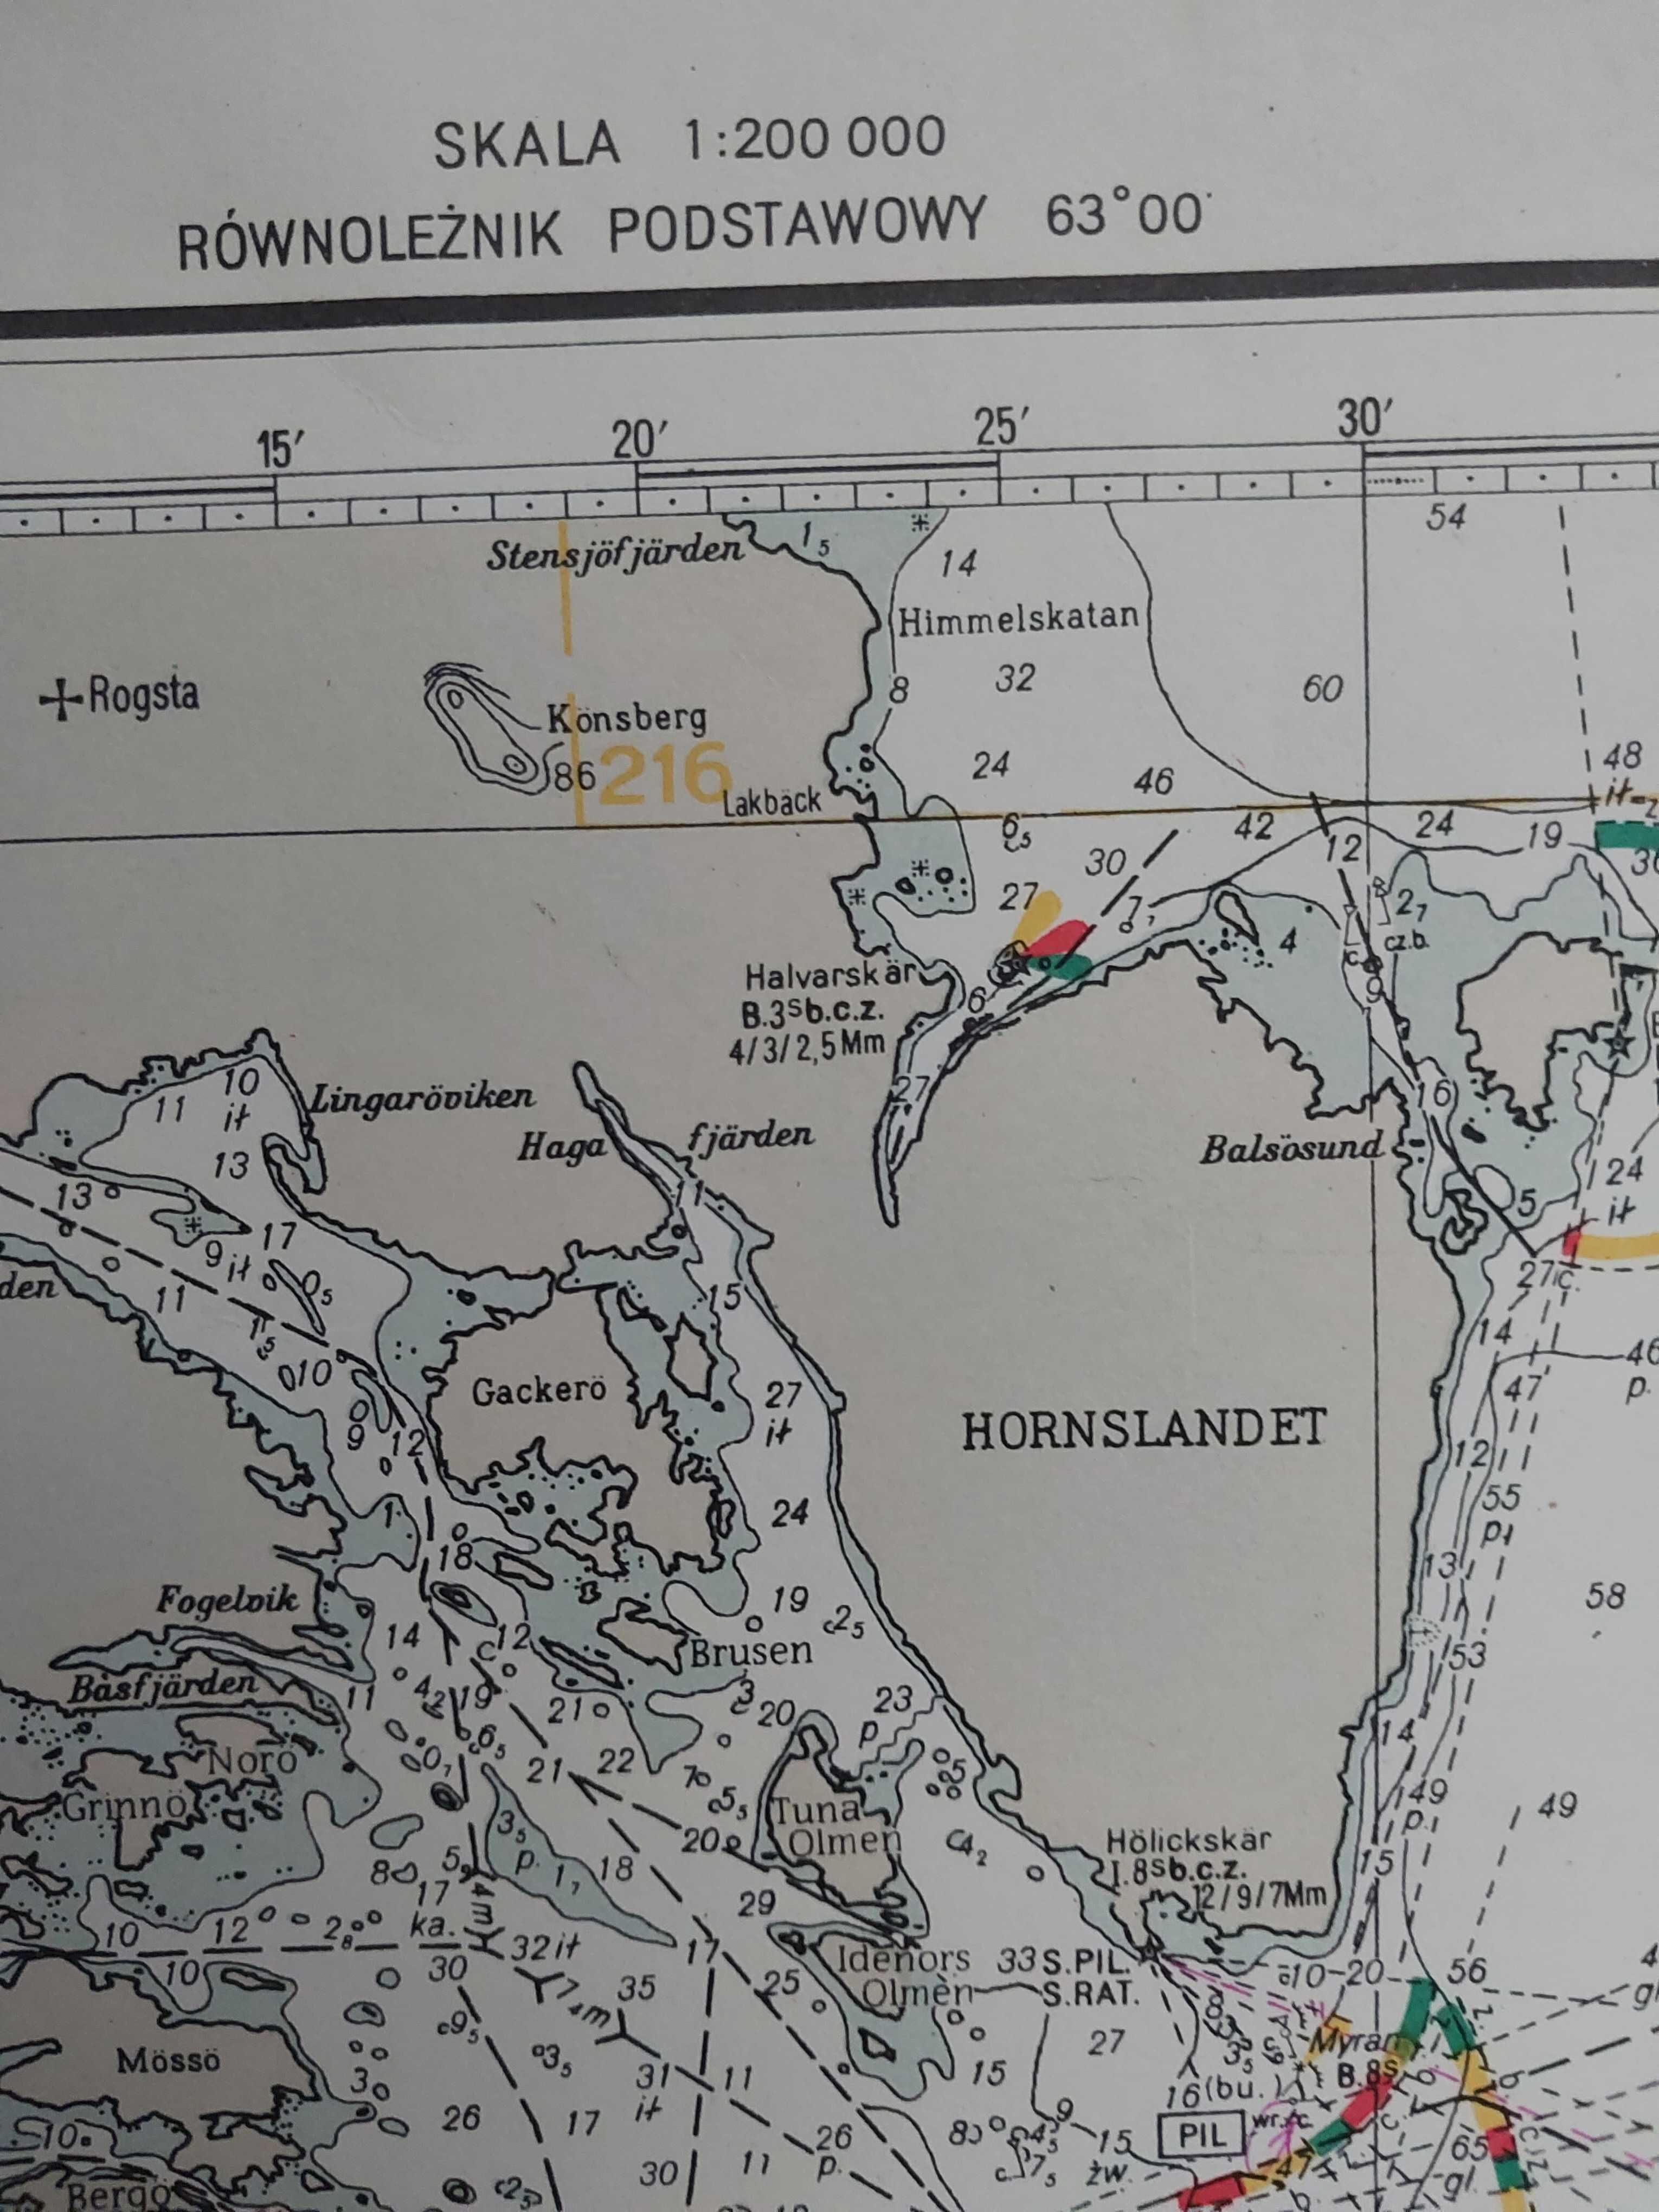 Mapa morskaPRL1979: Bałtyk. Zatoka Botnicka od Norrtalje do Hudiksvall